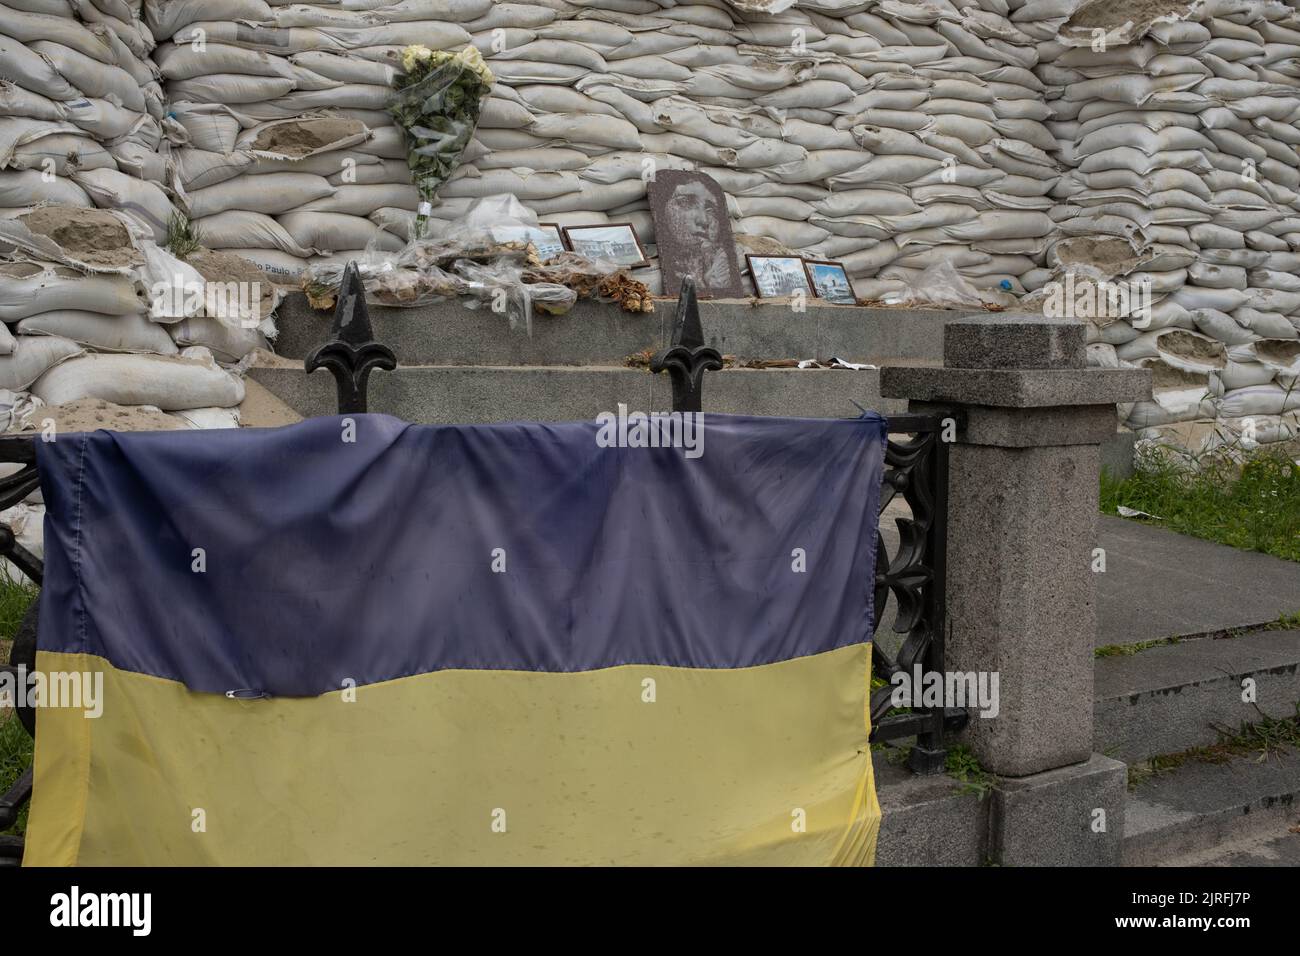 Monumento coperto di sacchi di sabbia per la protezione, durante la guerra causata dall'invasione russa, a Kyiv, Ucraina, 19 luglio 2022. Foto Stock